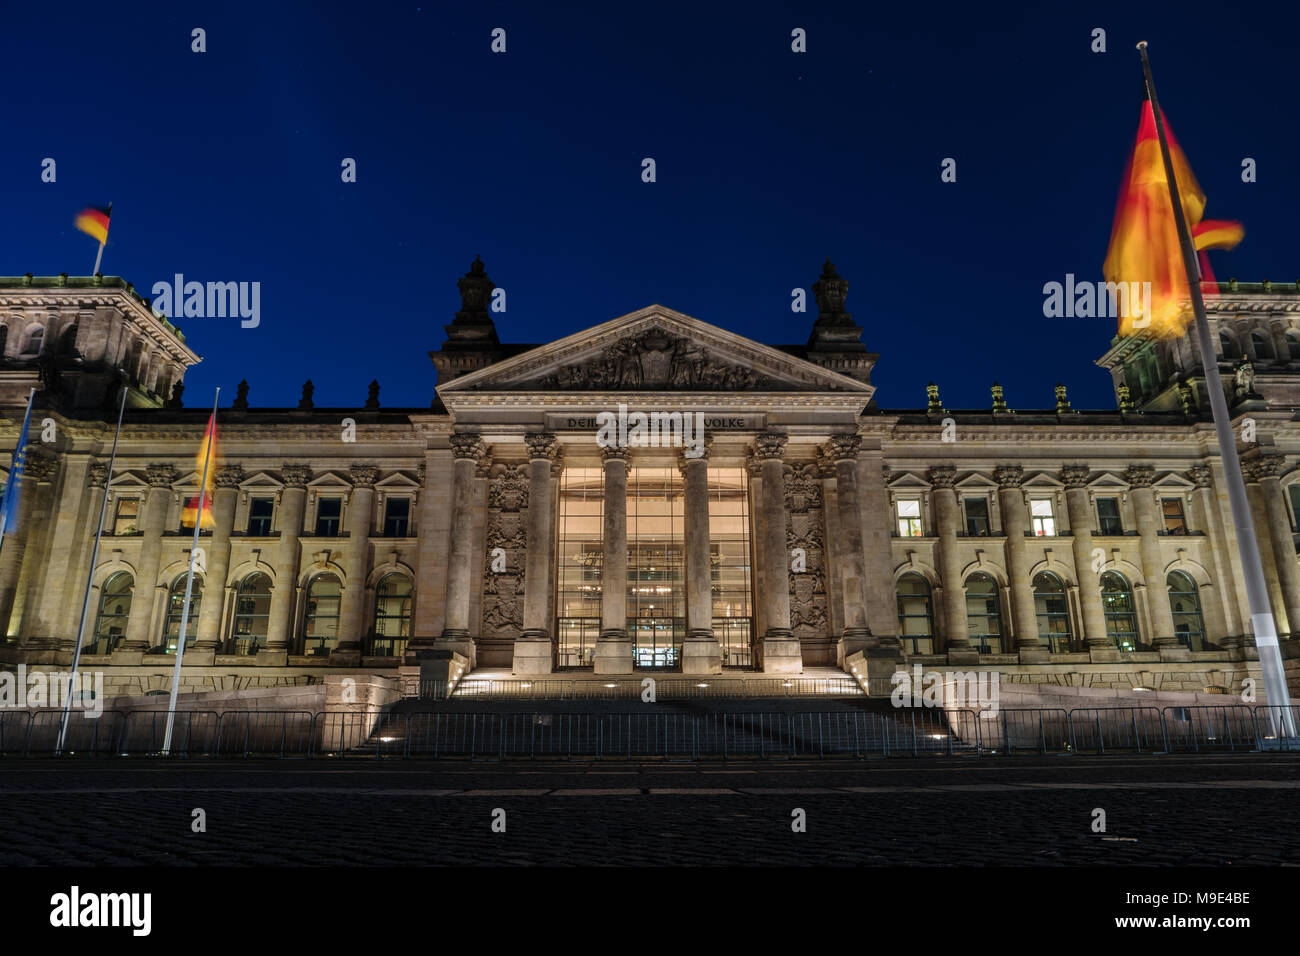 Deutsche Reichstag bei Nacht, Mitte, Berlin, Deutschland, Europa. Reichstag und Bundestag ist das Parlament der Bundesrepublik Deutschland. Beliebte Sehenswürdigkeiten, berühmten trav Stockfoto